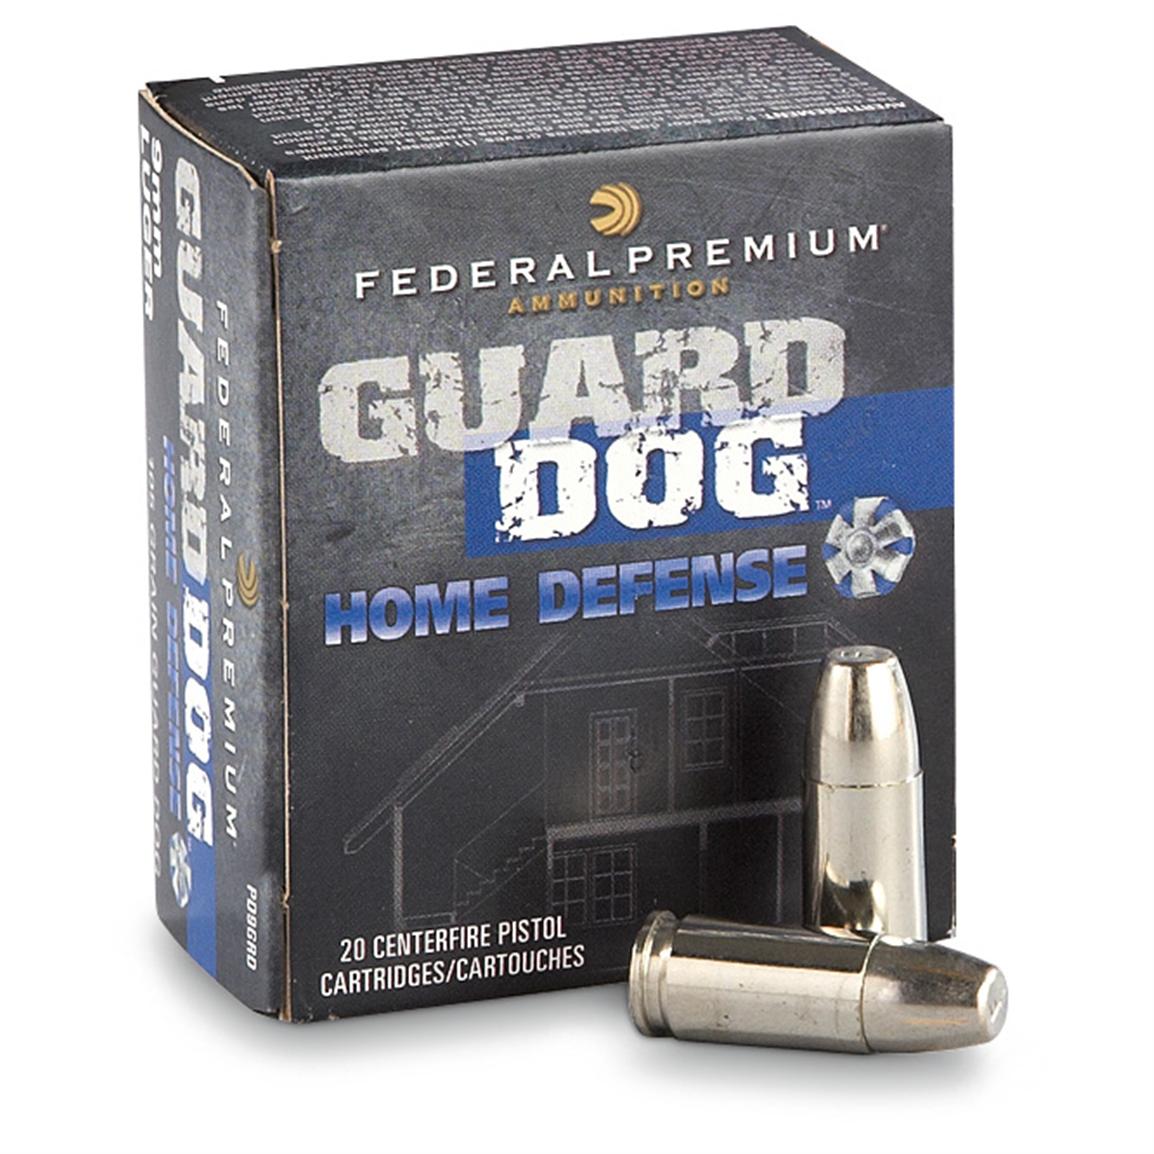 Federal Premium Guard Dog 9mm Luger EFMJ 105 Grain 20 Rounds 